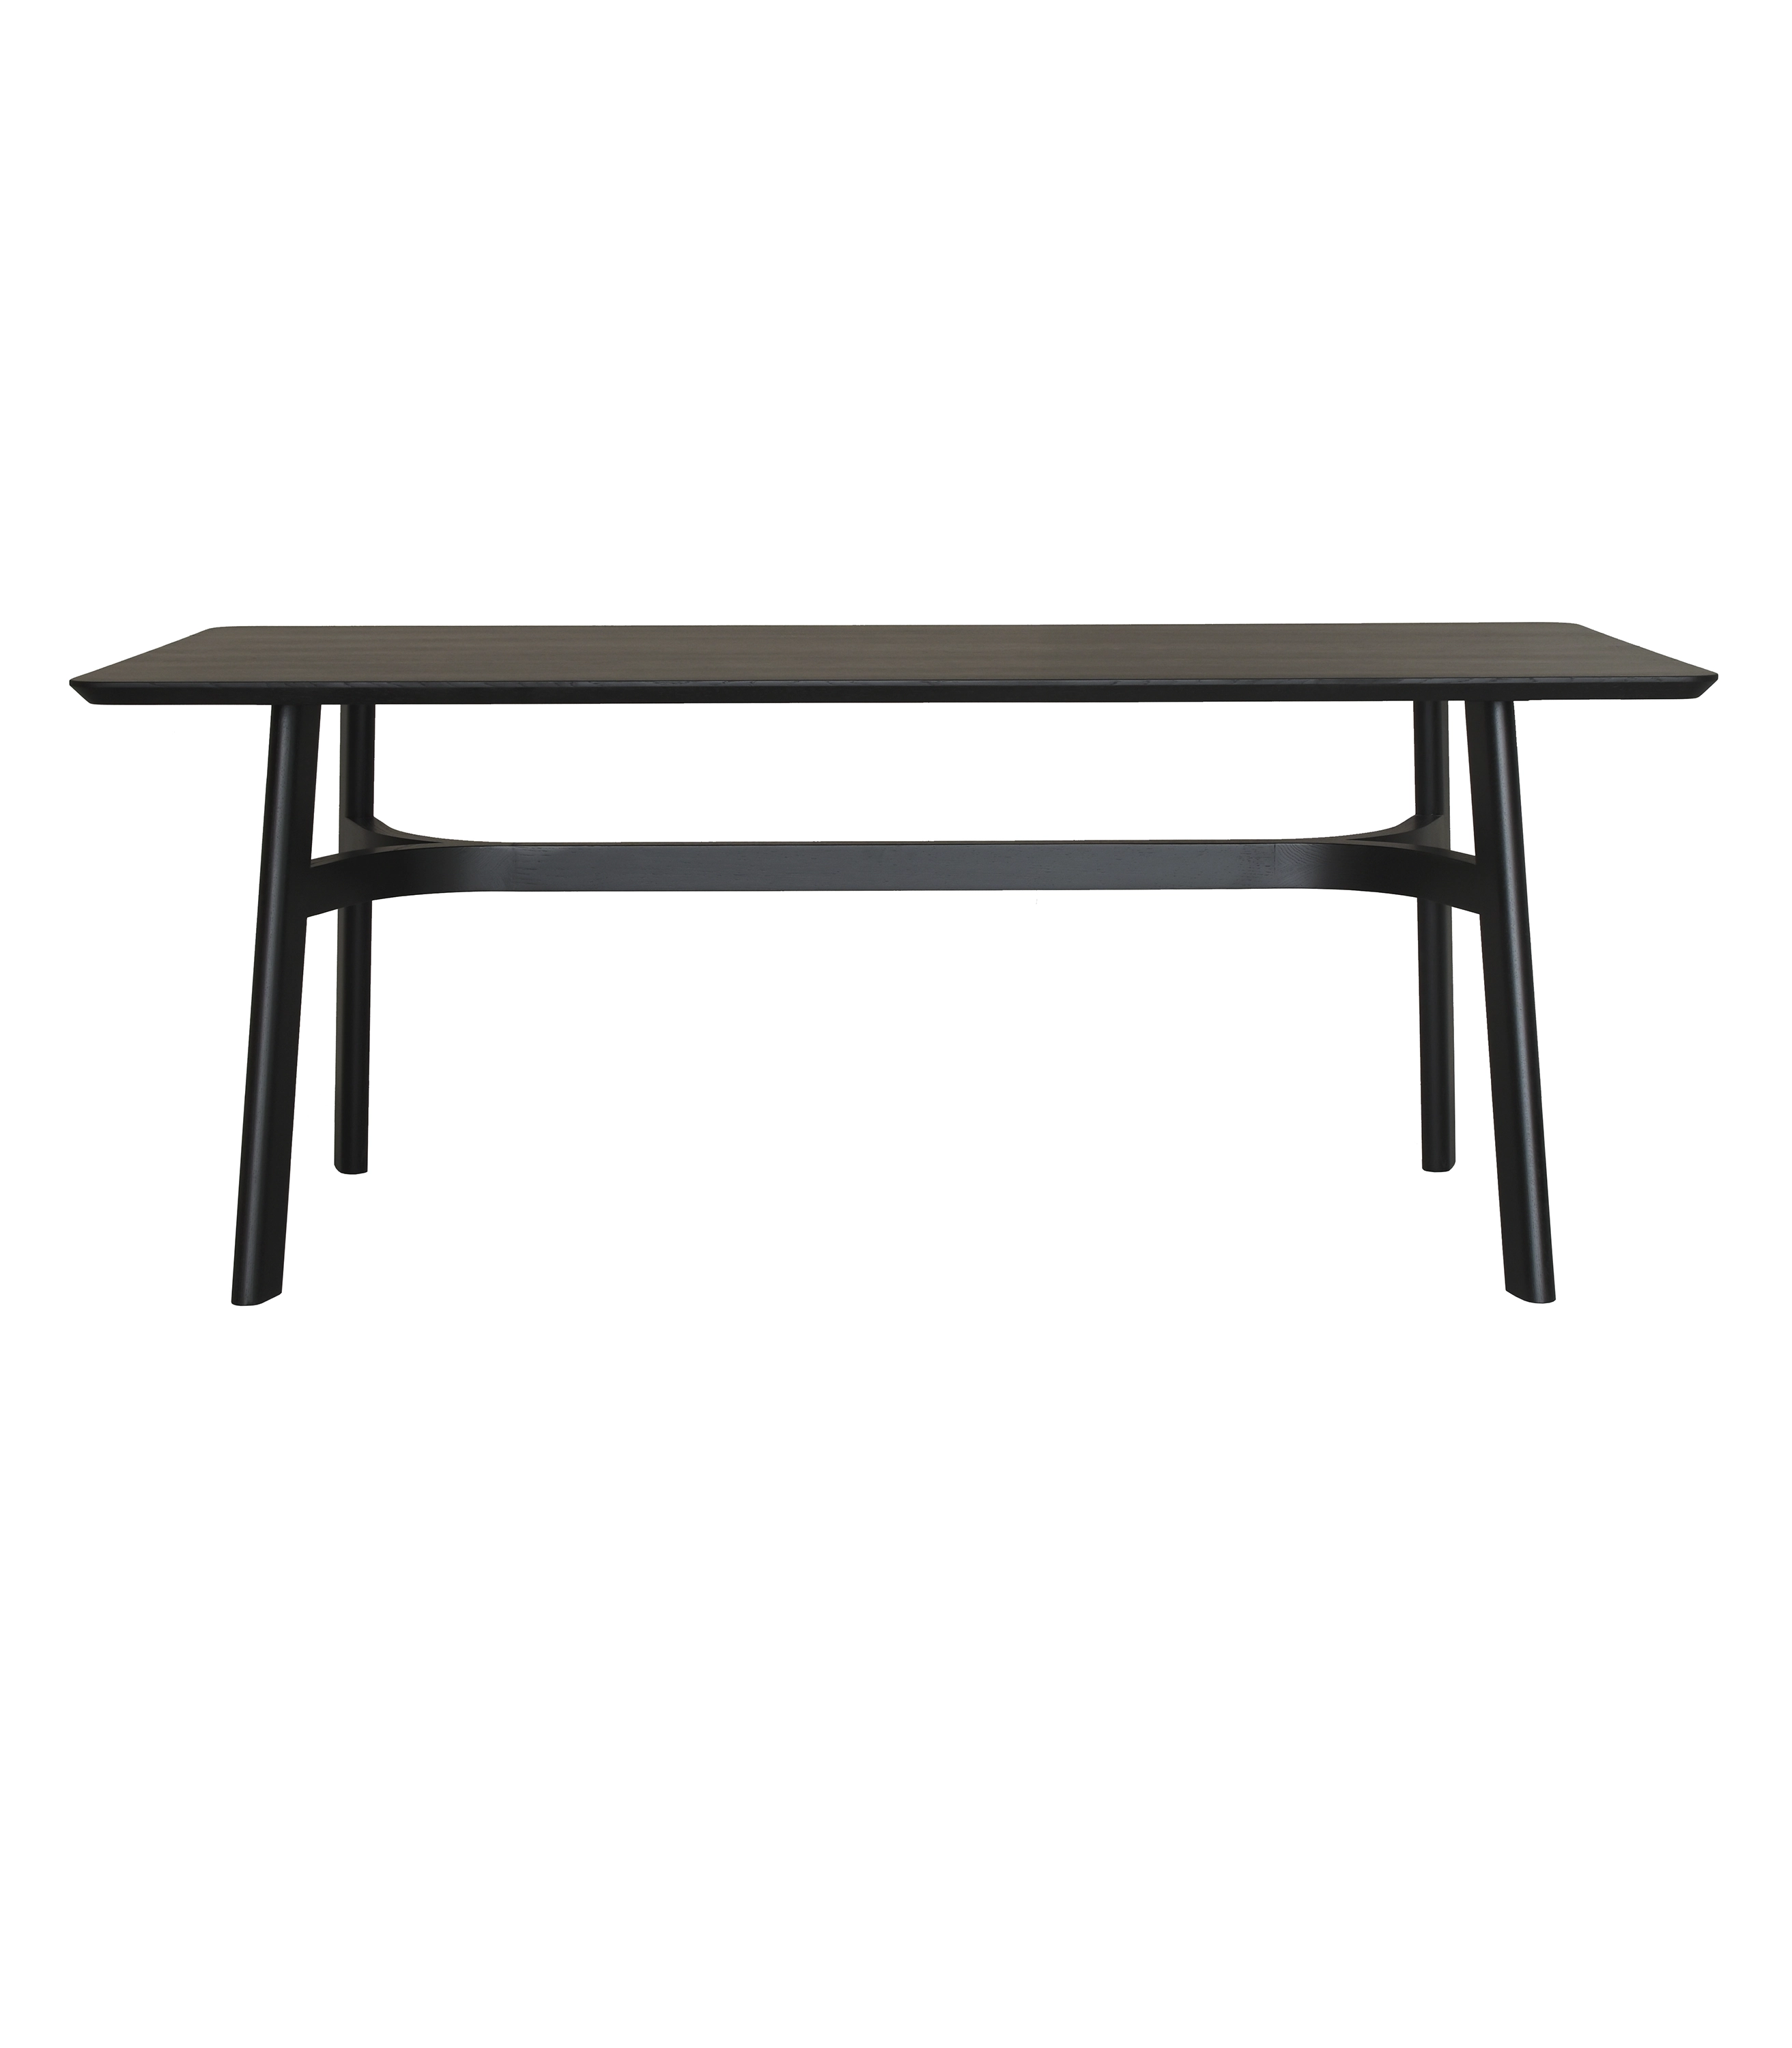 czarny stół prostokątny dębowy w stylu skandynawskim